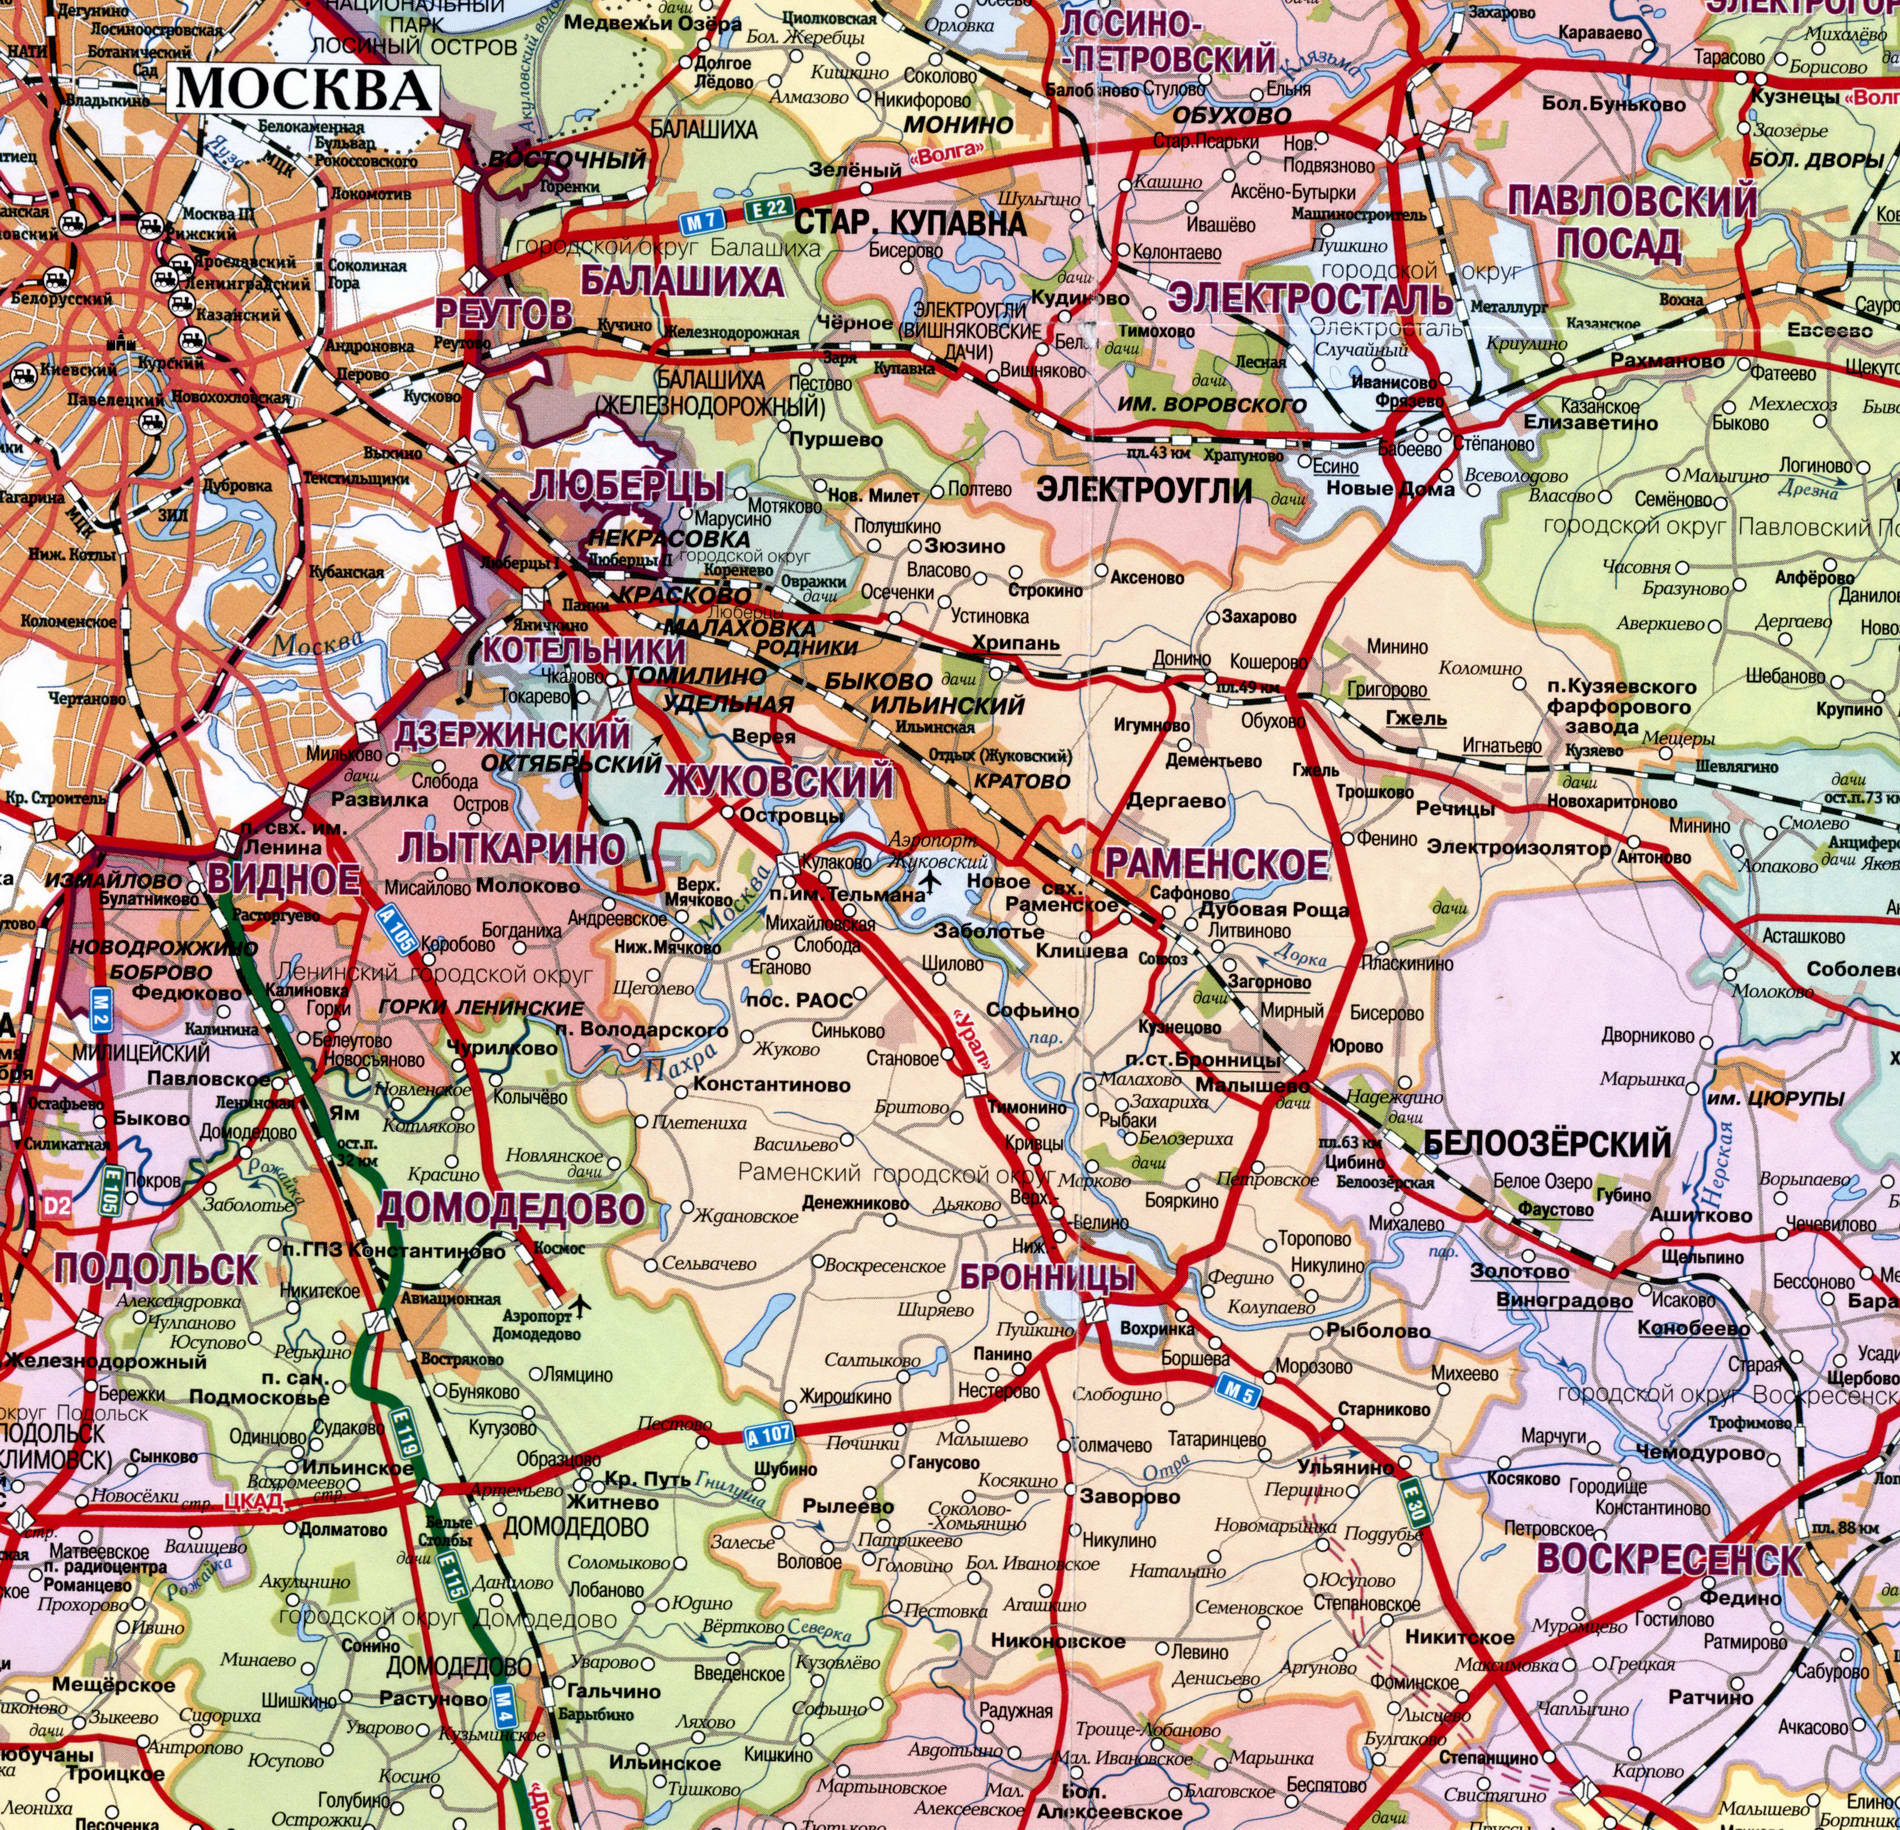 Раменский район Московской области на карте Московской области